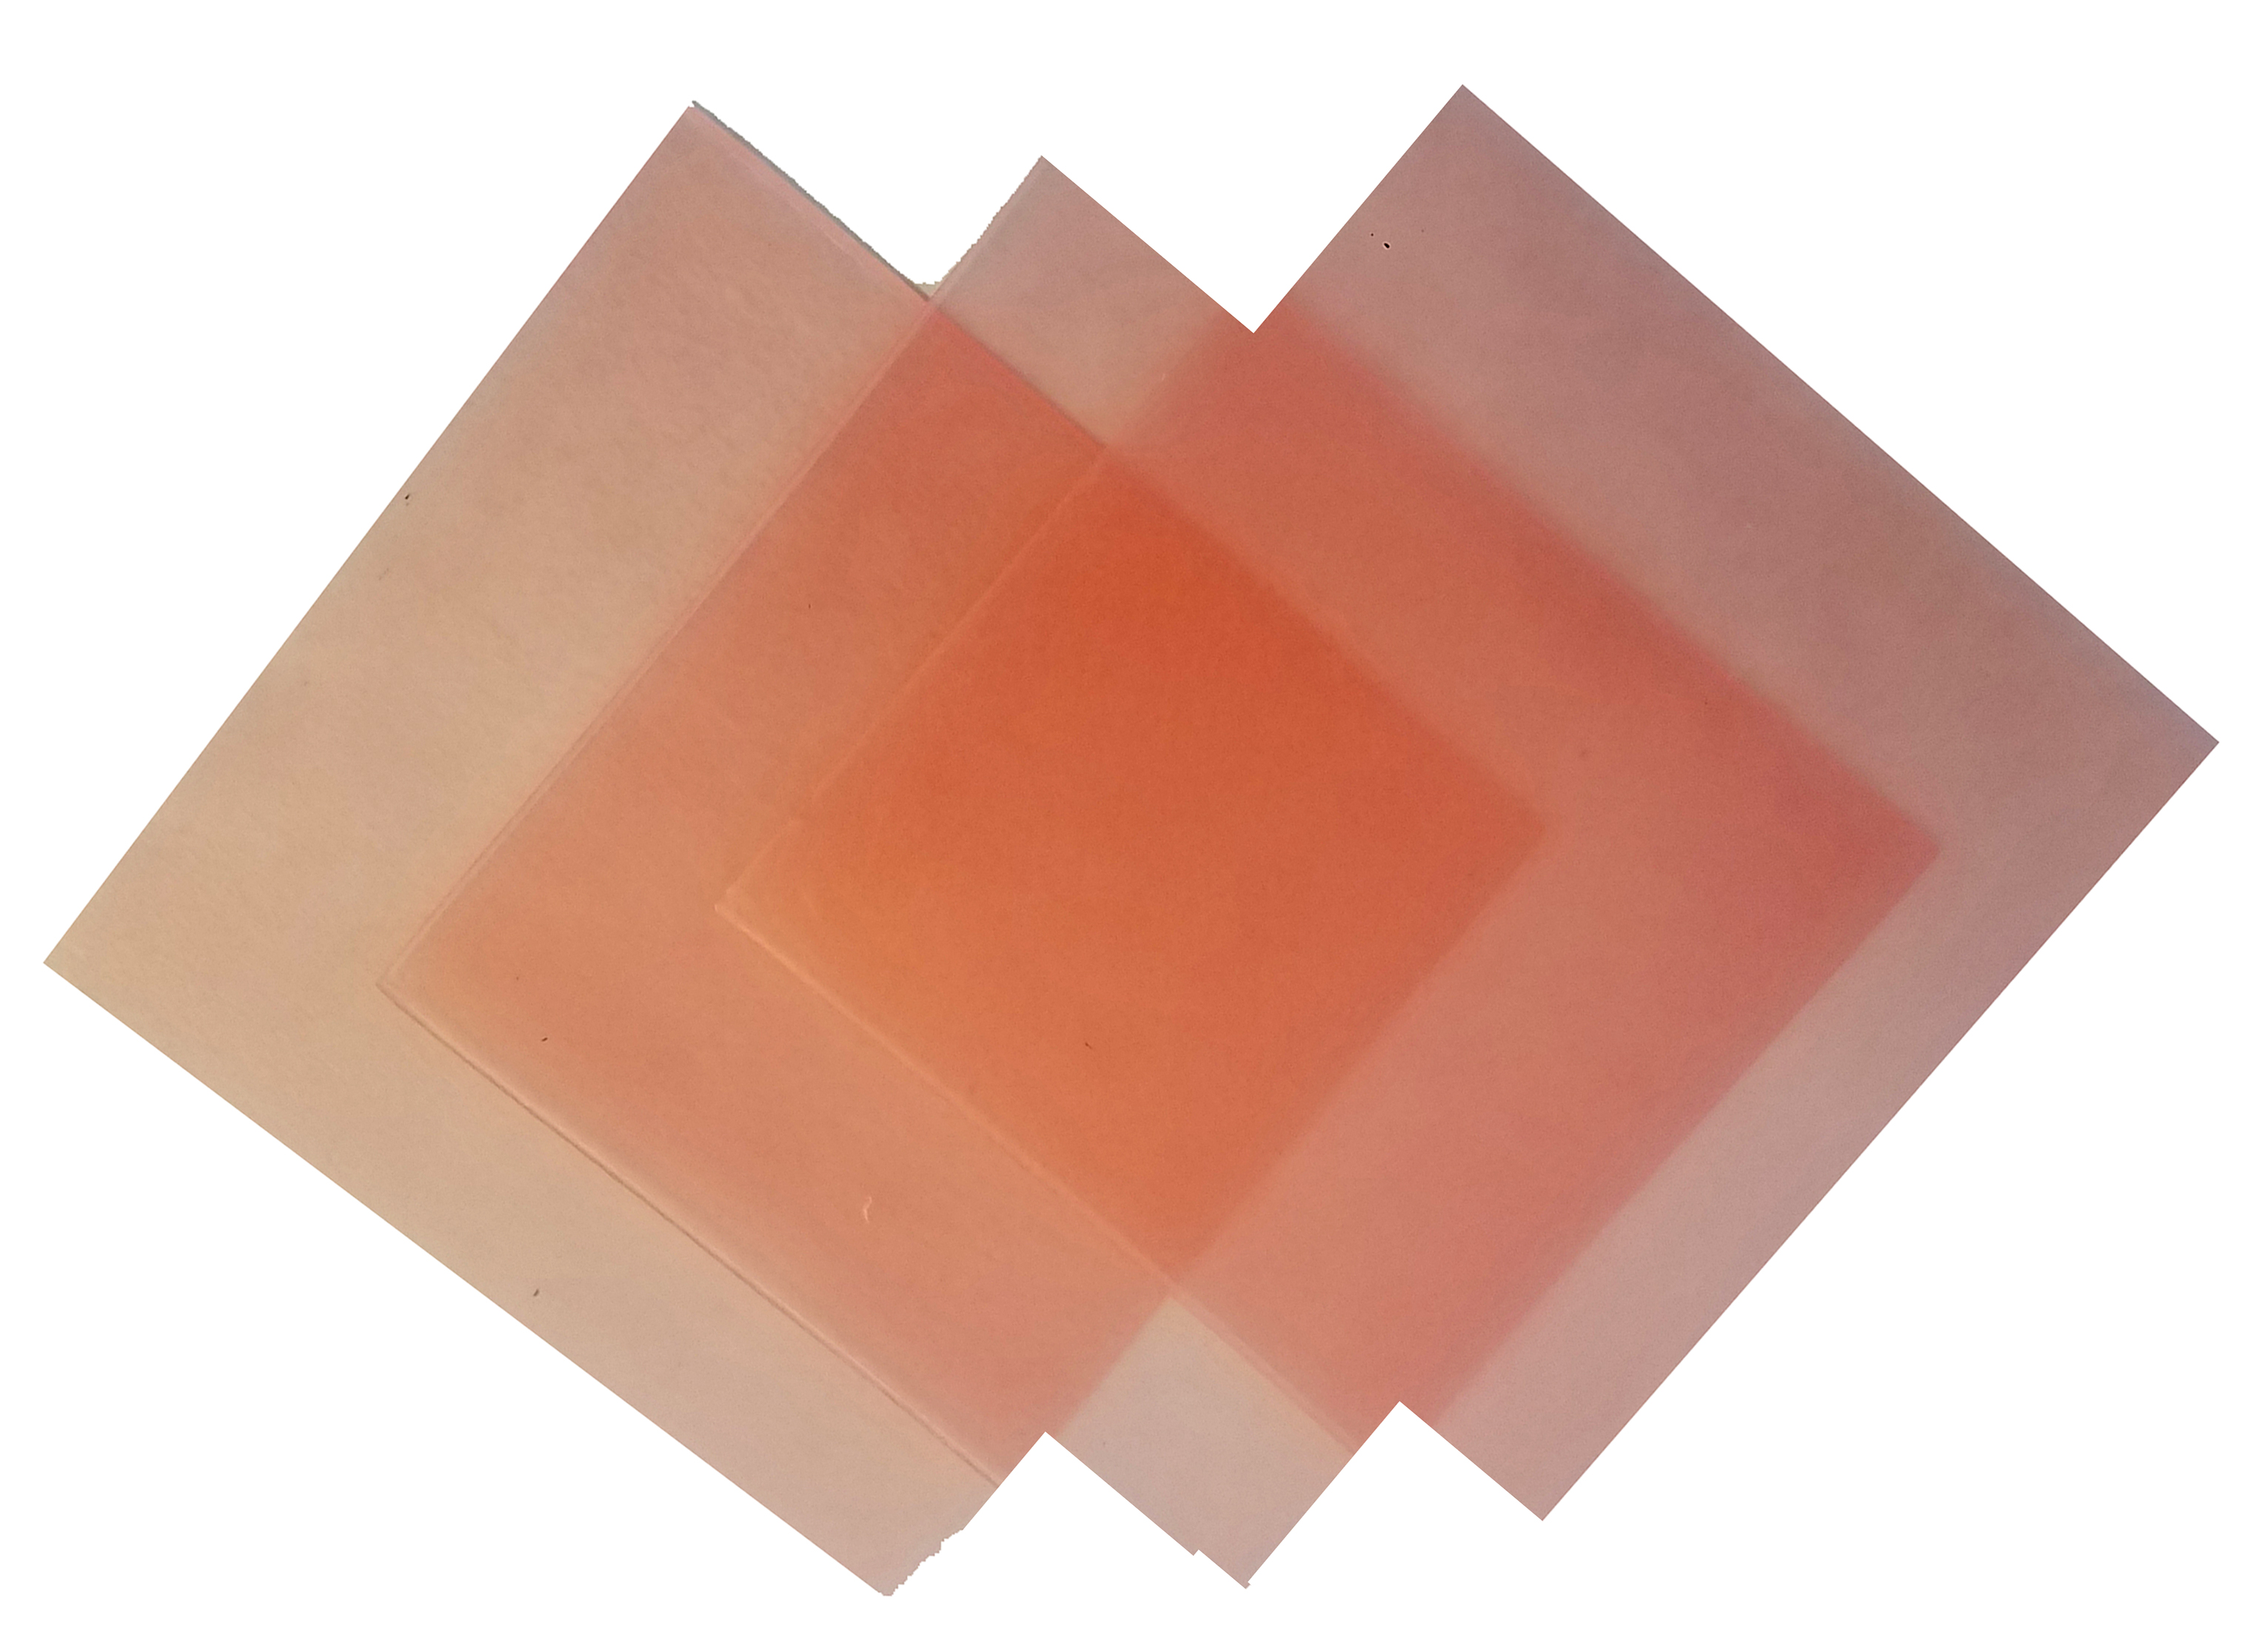 4"x4" sheet wax 20 gauge pink